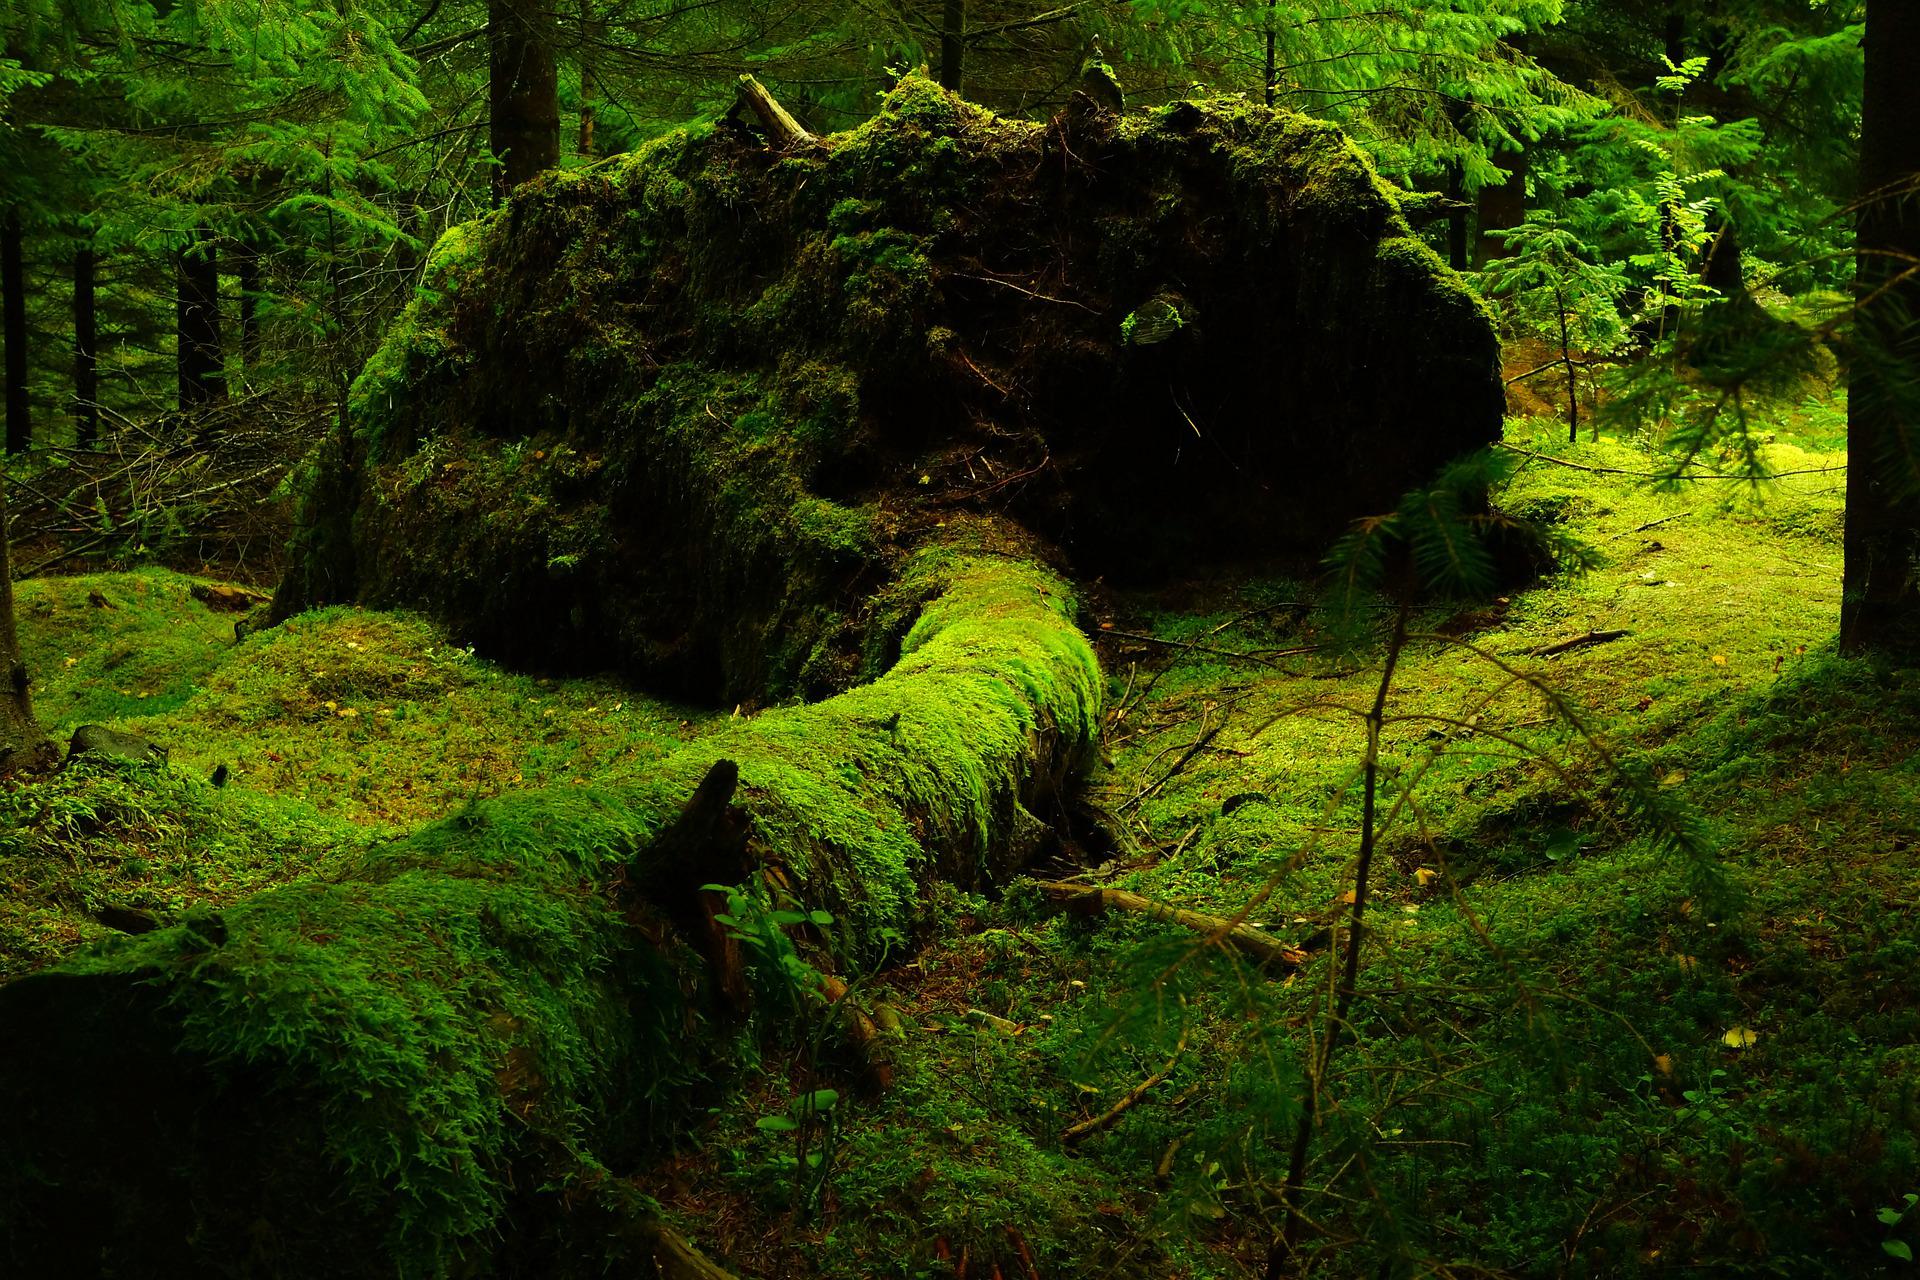 Sammaldunud metsaalune, kus on sammaldega kaetud pikali kukku puu koos juuremättaga